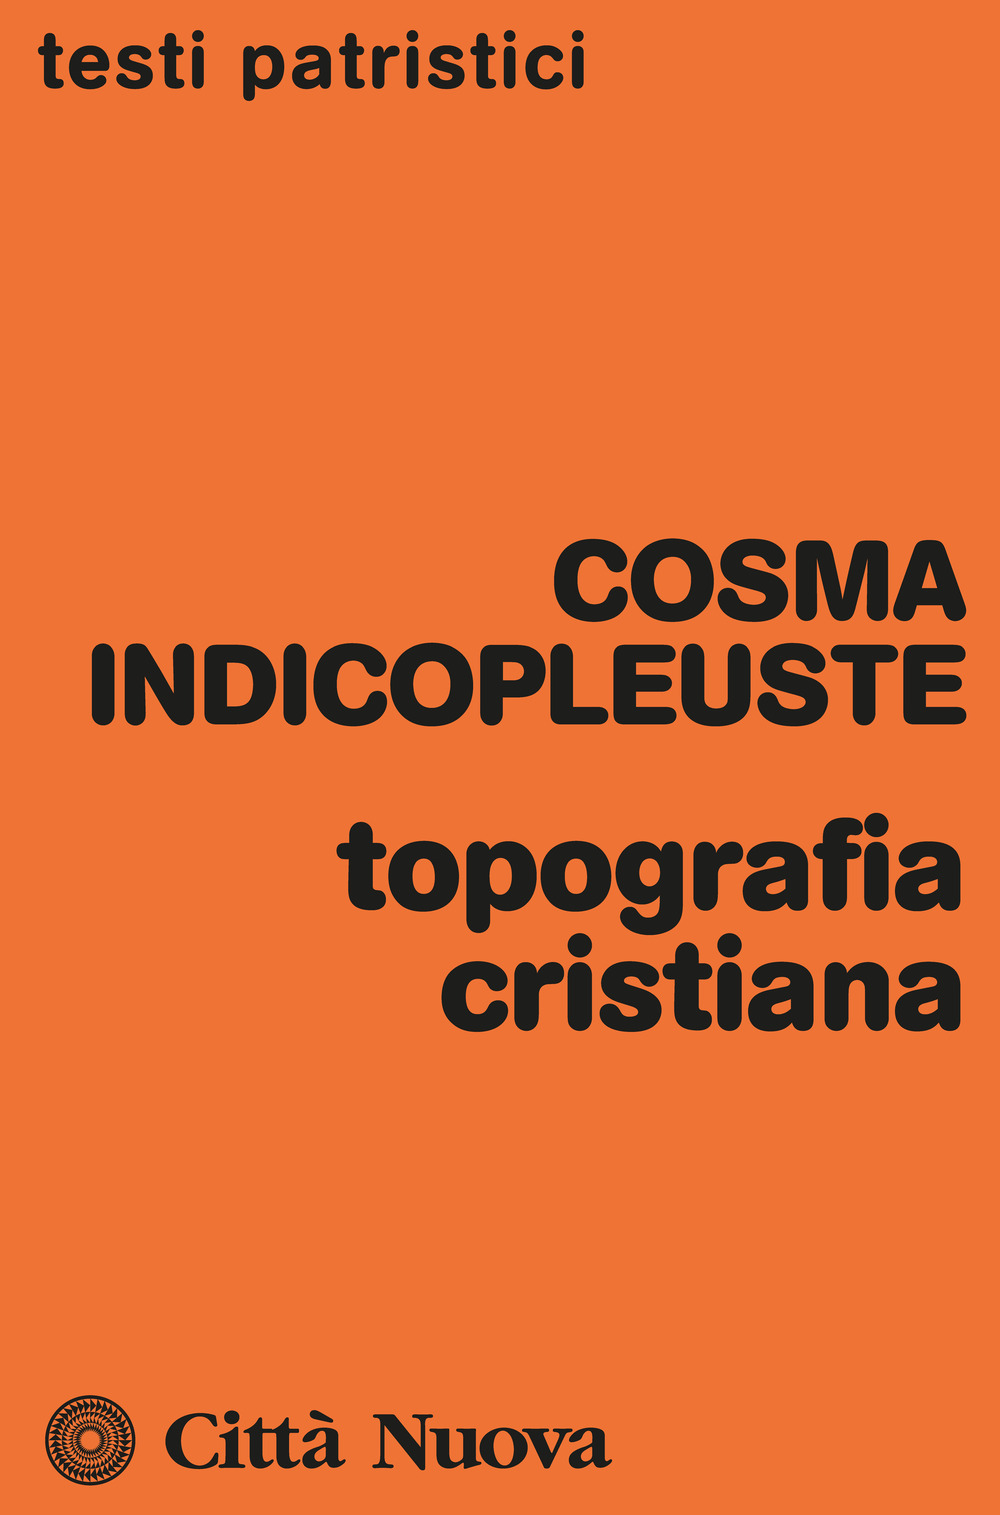 Libri Indicopleuste Cosma - Topografia Cristiana NUOVO SIGILLATO, EDIZIONE DEL 17/03/2023 SUBITO DISPONIBILE